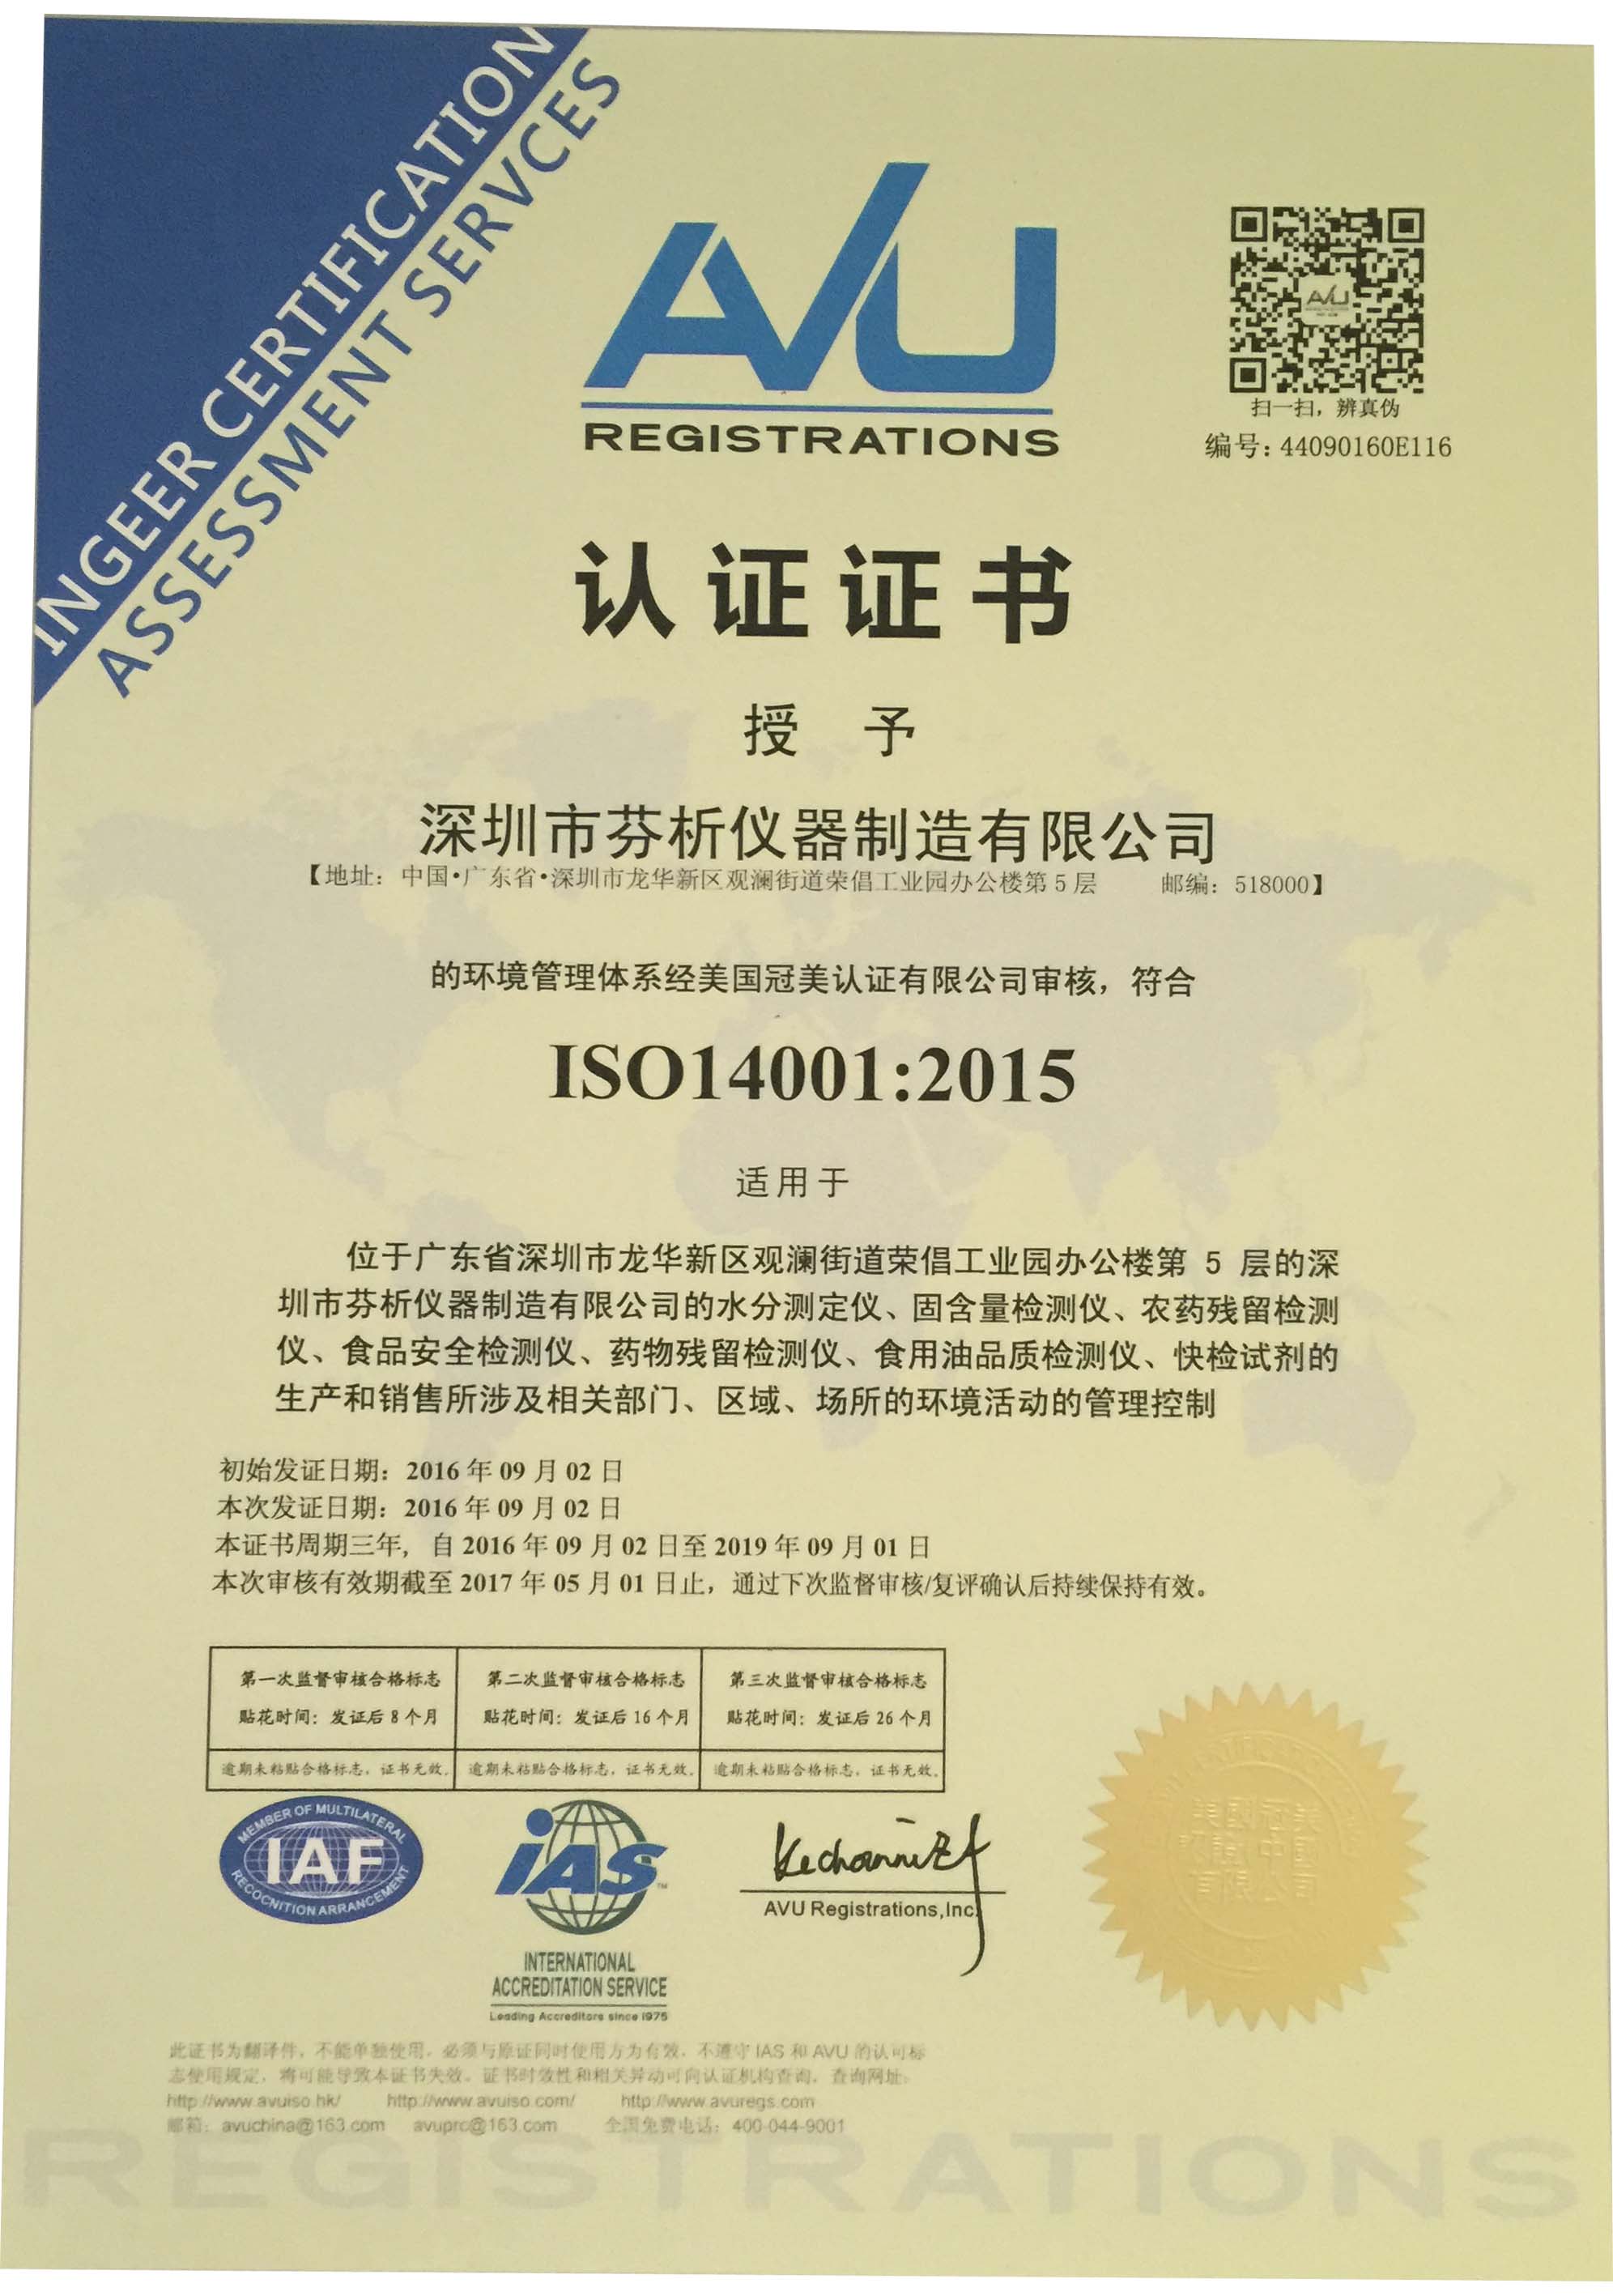 热烈祝贺我公司通过ISO14001环境管理体系认证